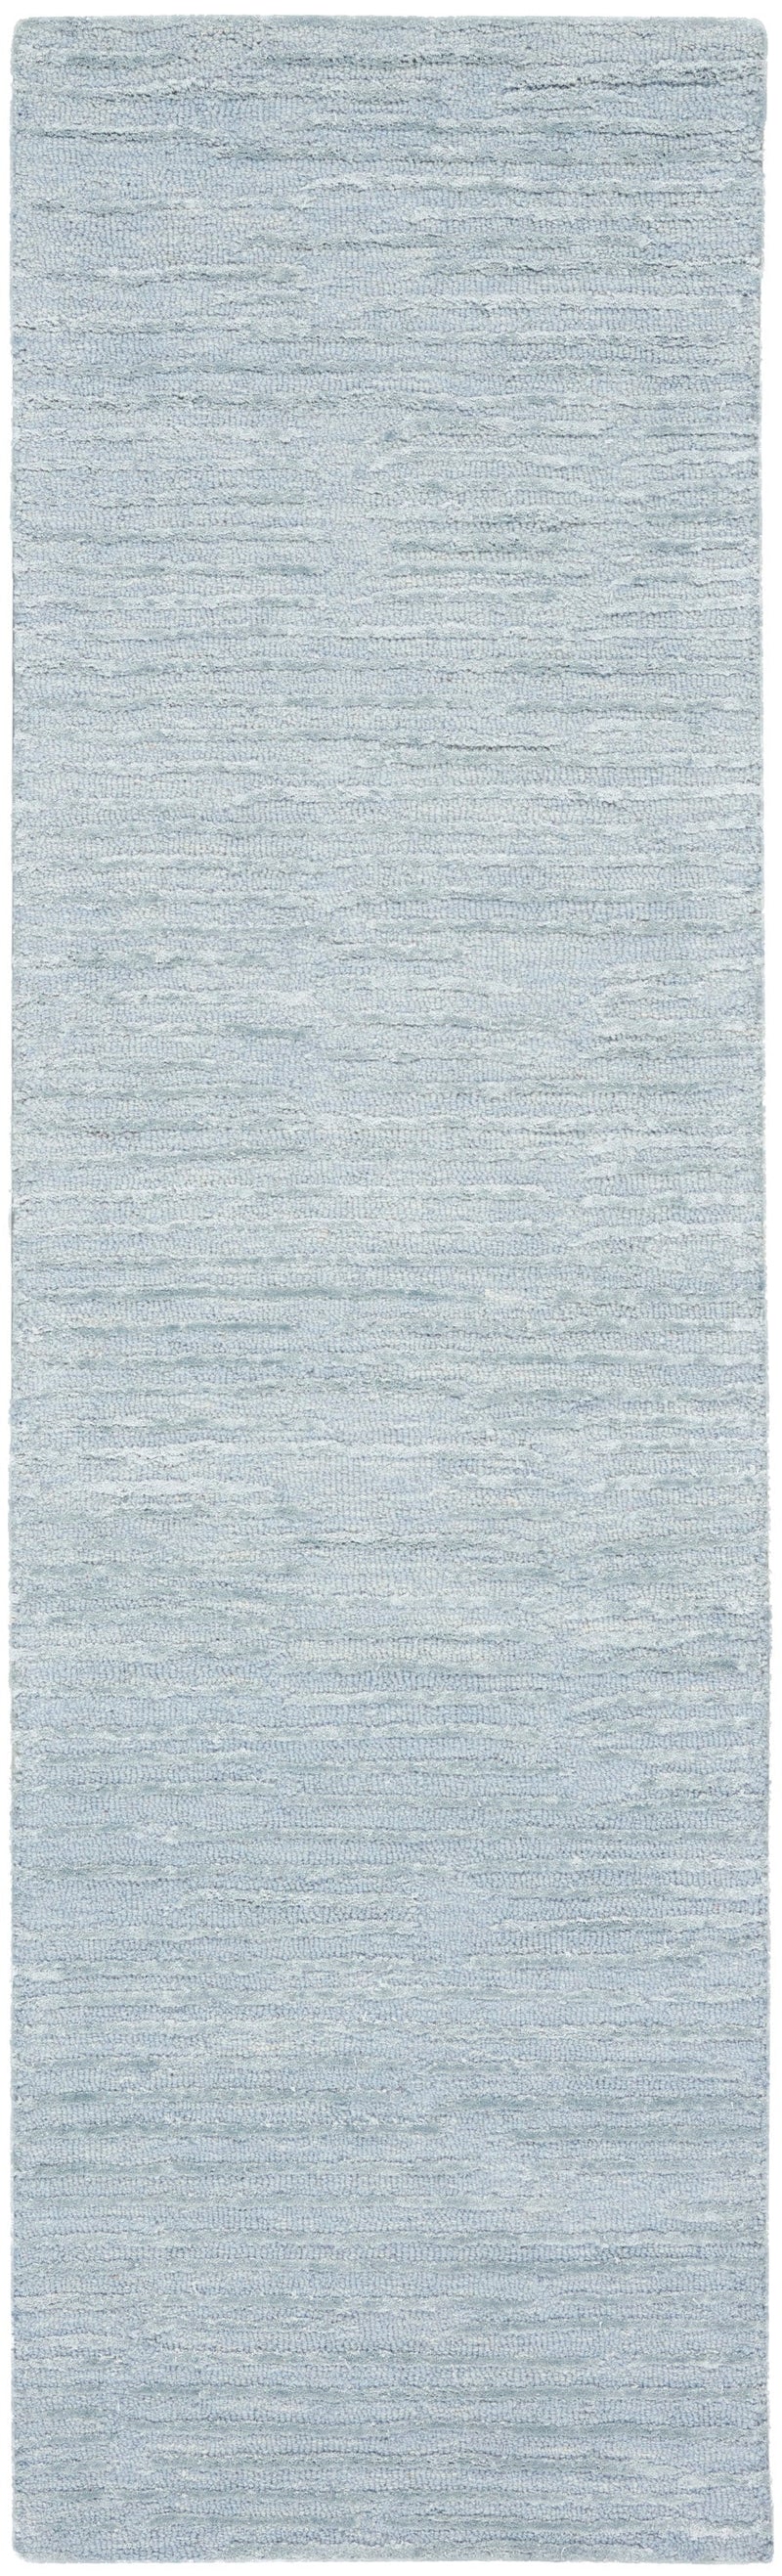 media image for ck010 linear handmade light blue rug by nourison 99446879950 redo 2 285